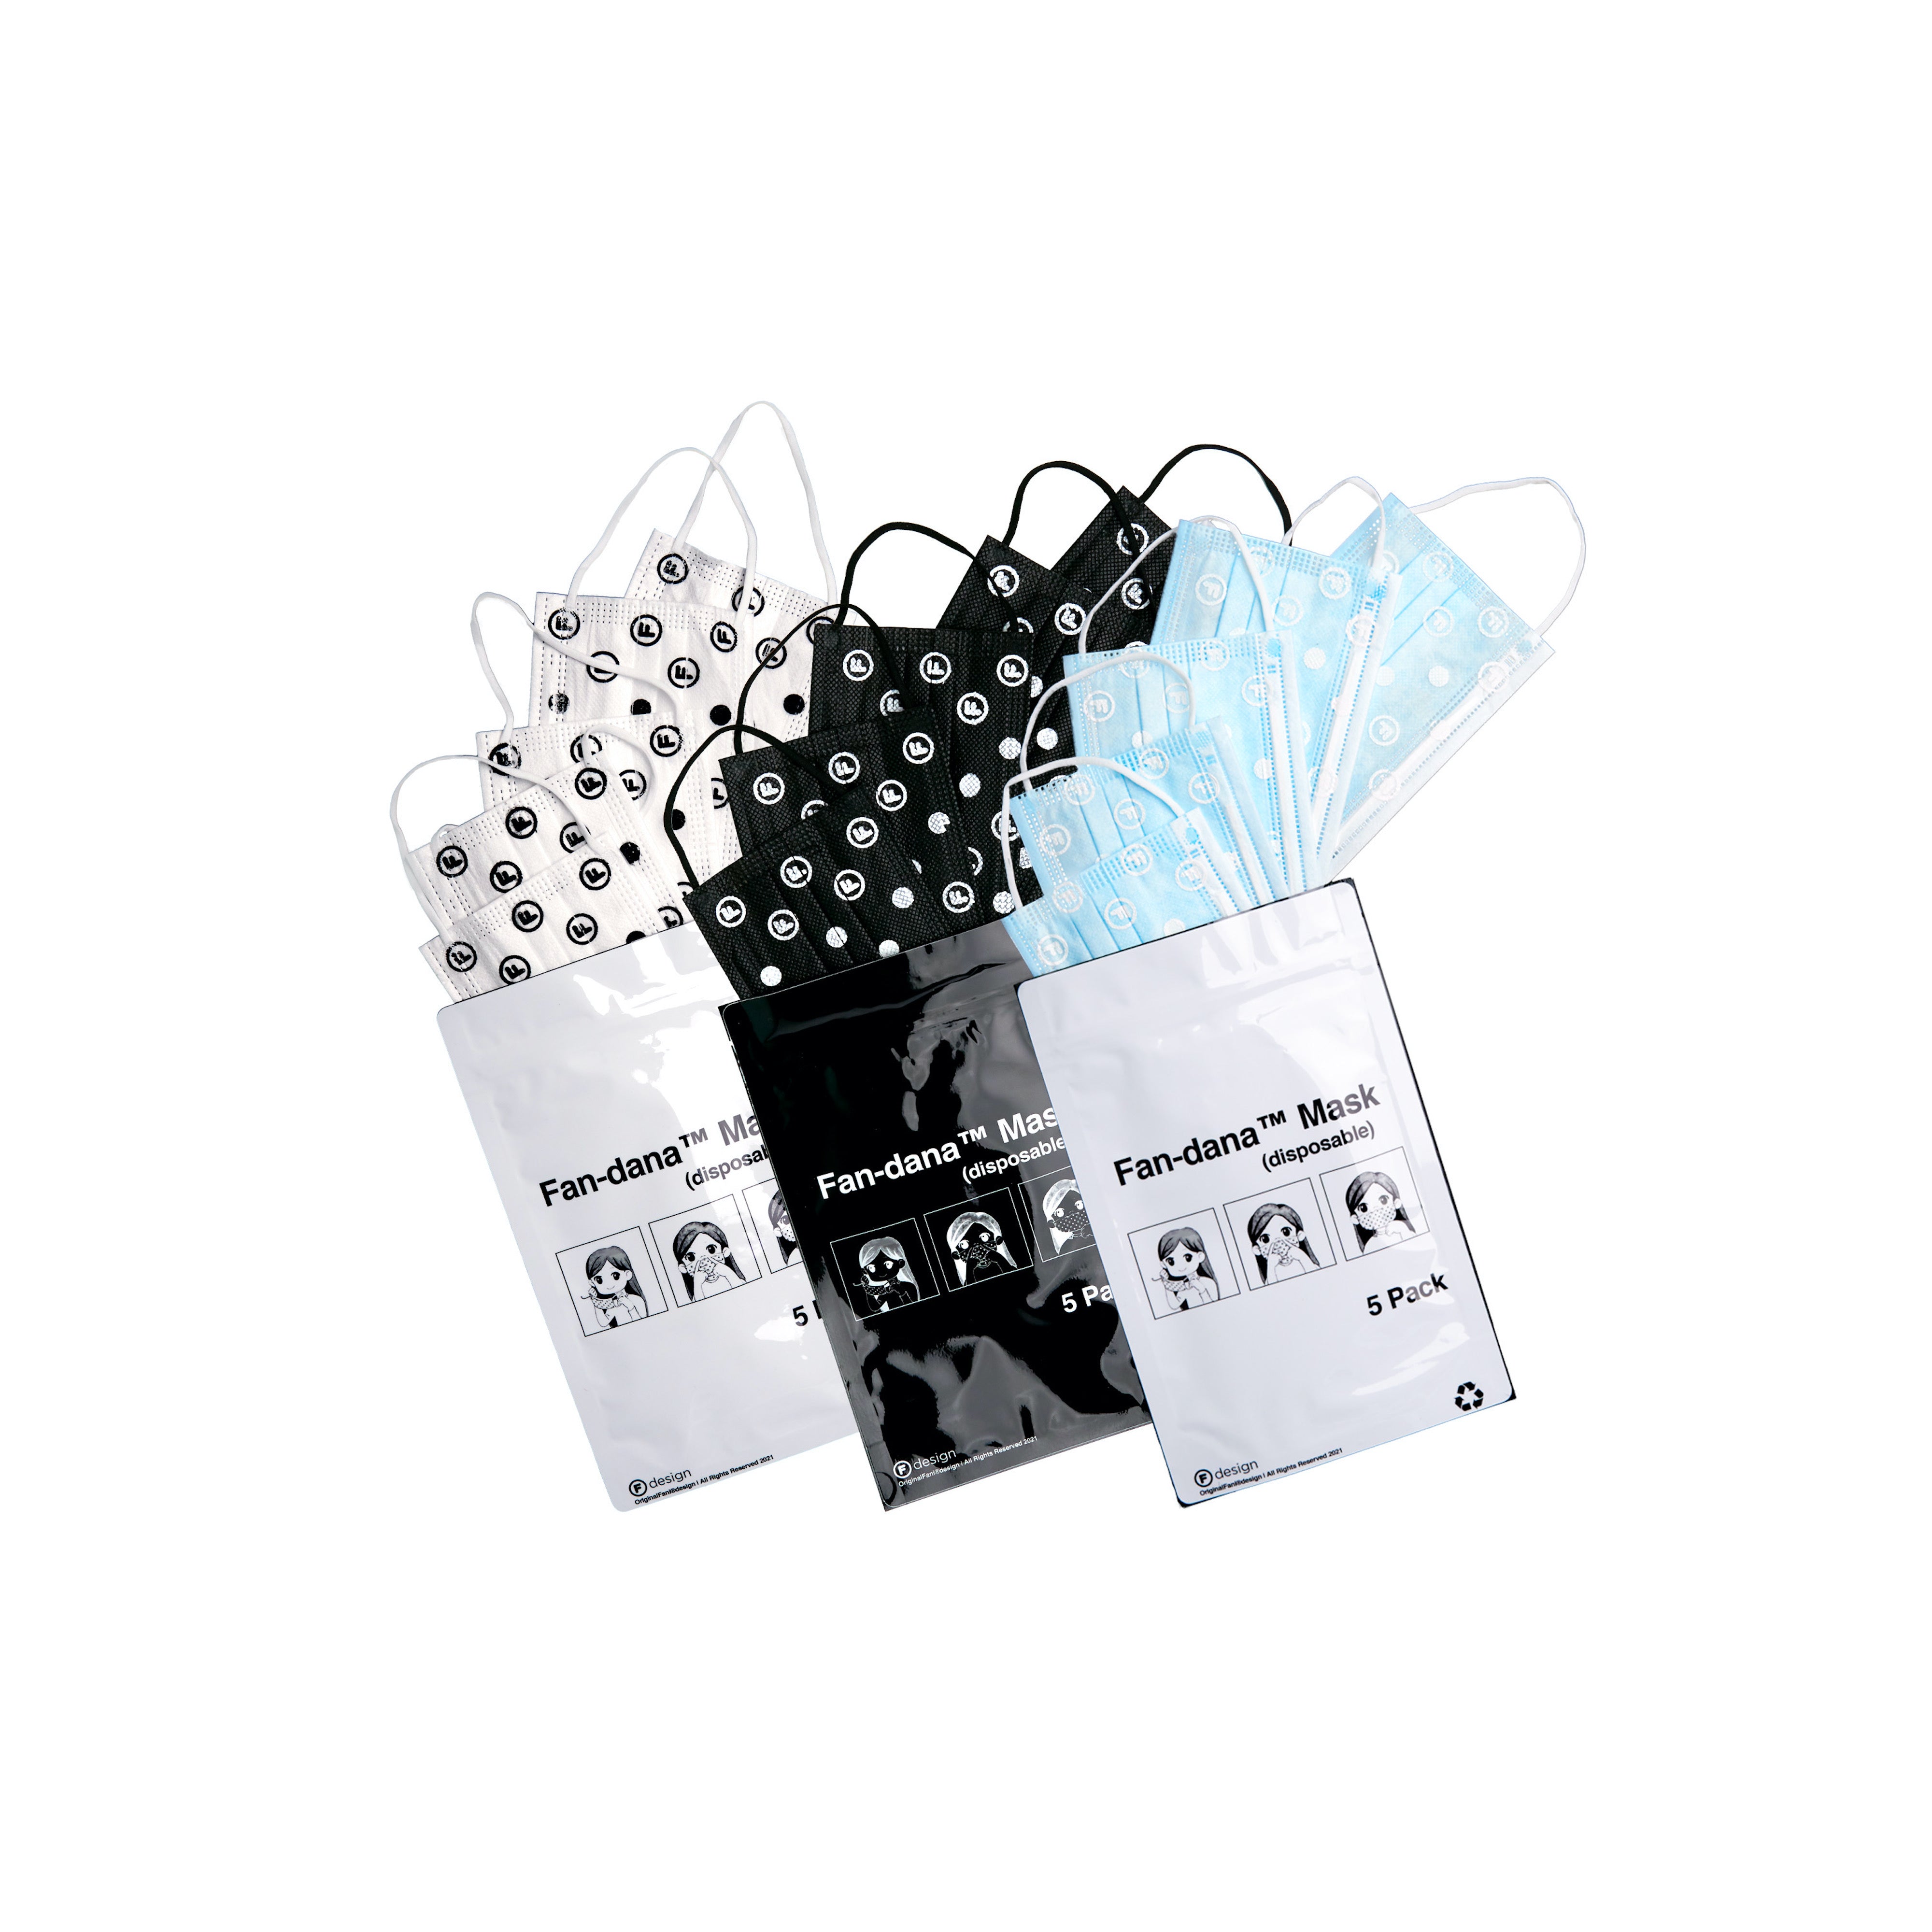 OriginalFani®design Fan-dana™️ Mask (disposable) 5 pack (Black)